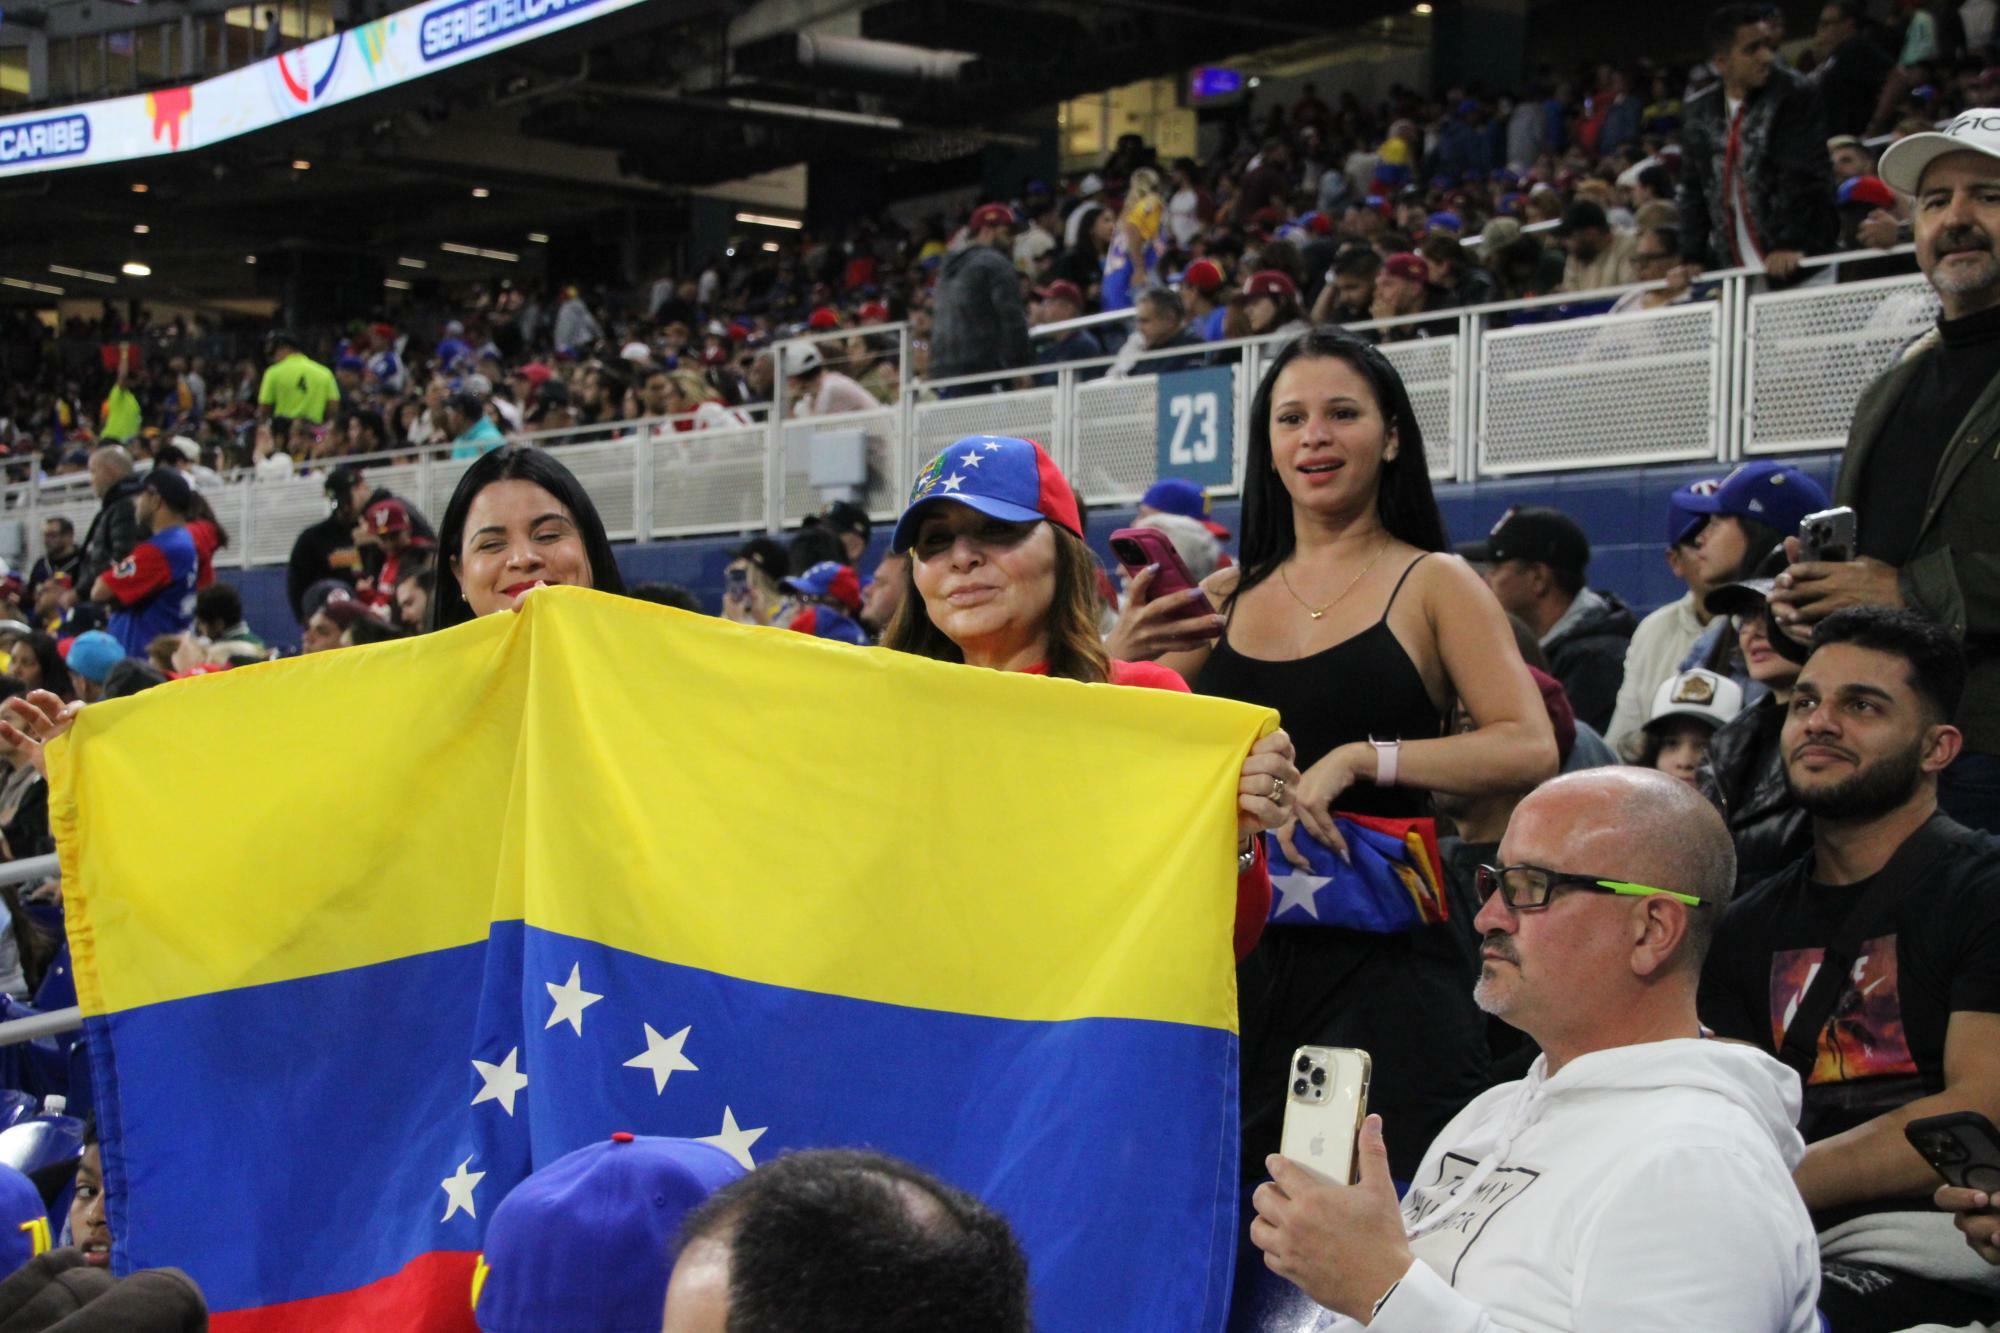 ラテン系移民の多いマイアミとあって、多くのベネズエラ人がスタジアムに応援にやってきていた。